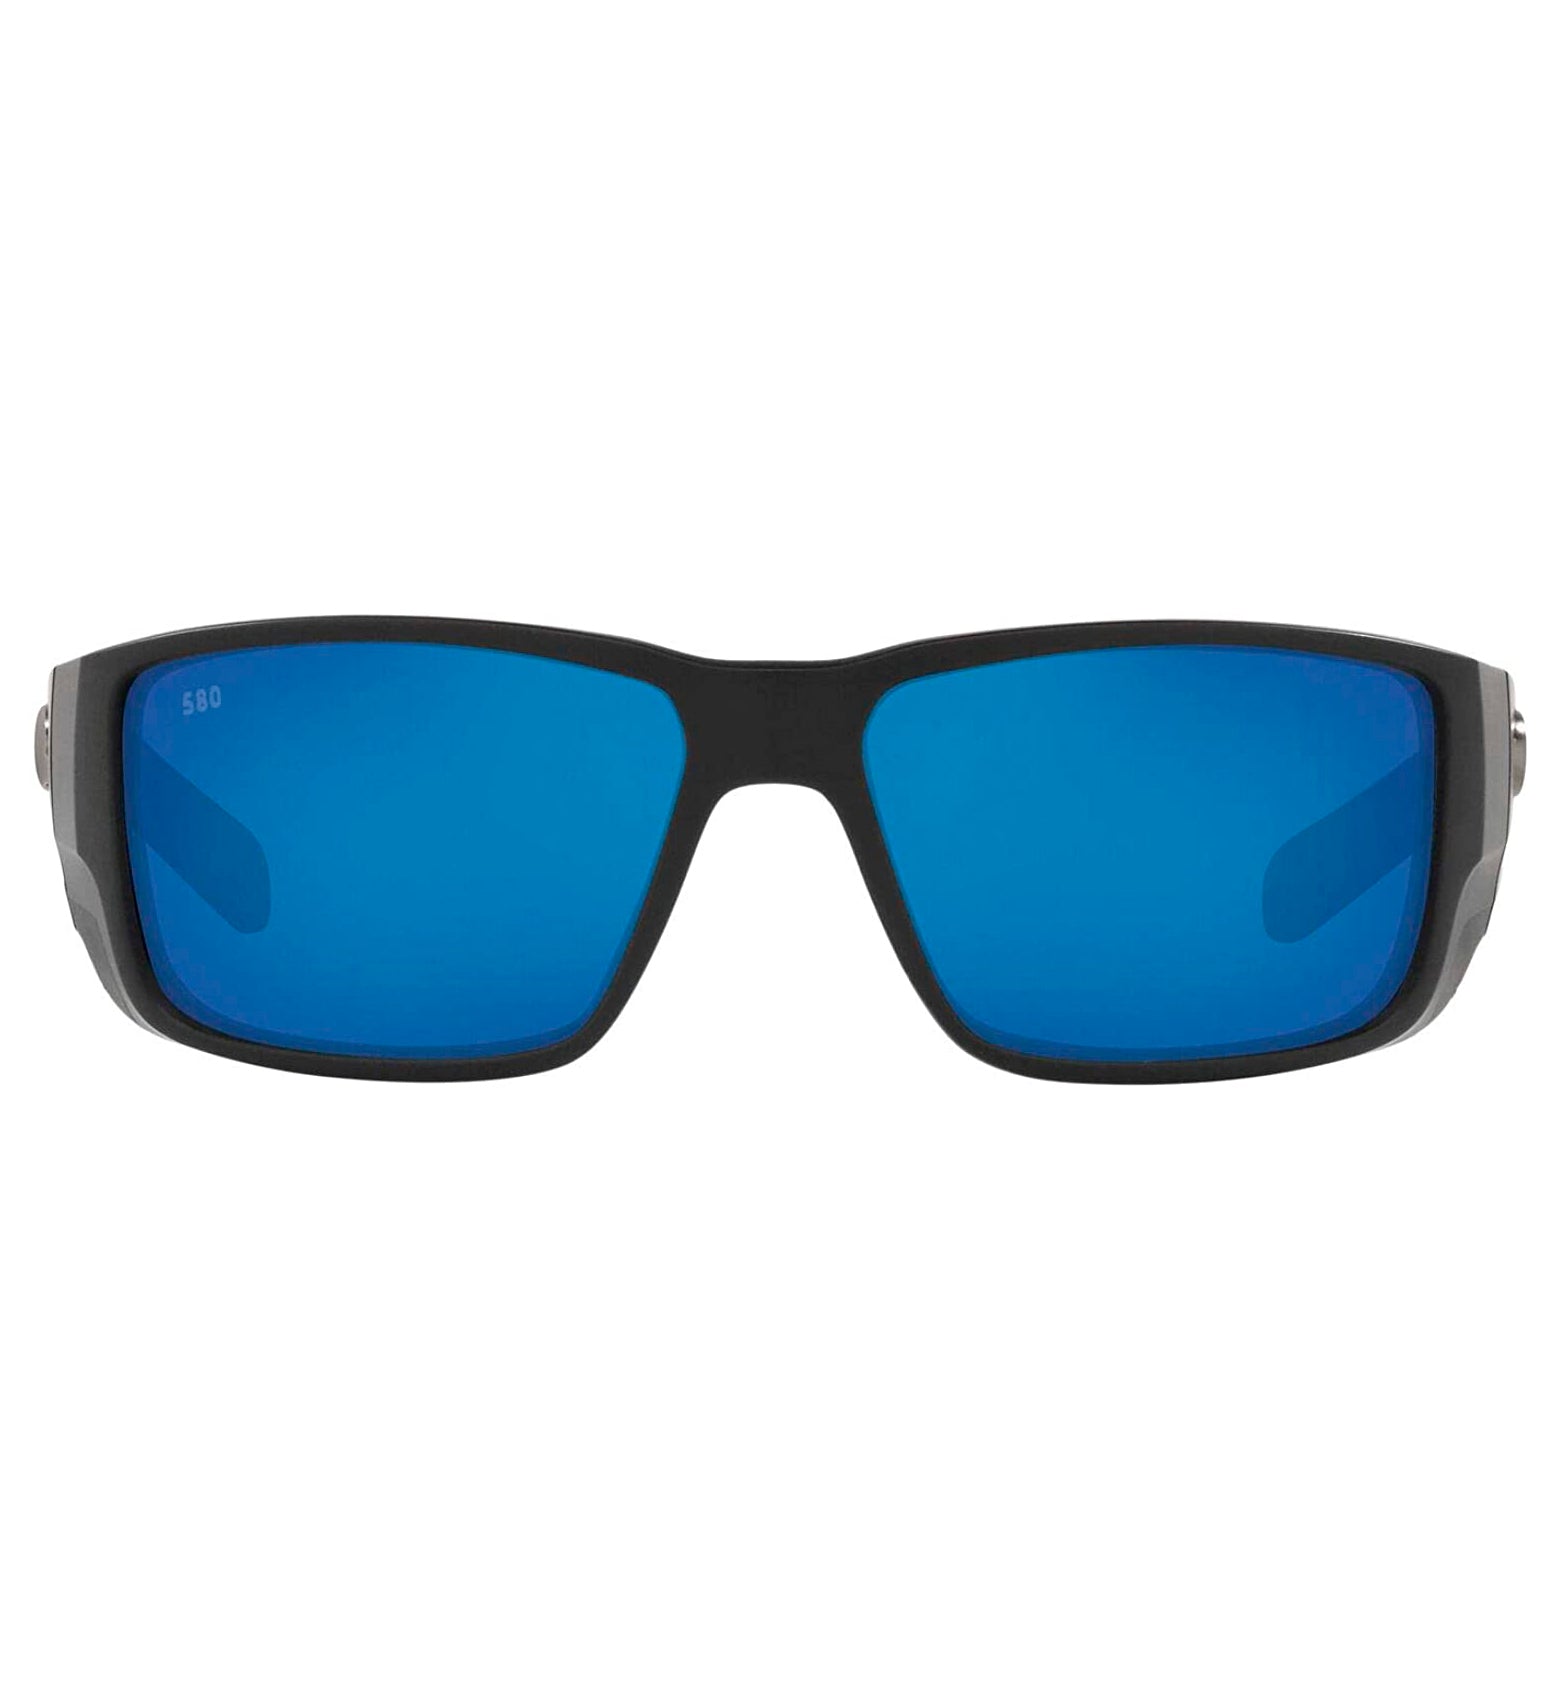 Costa Del Mar Blackfin Pro Sunglasses MatteBlack BlueMirror 580G